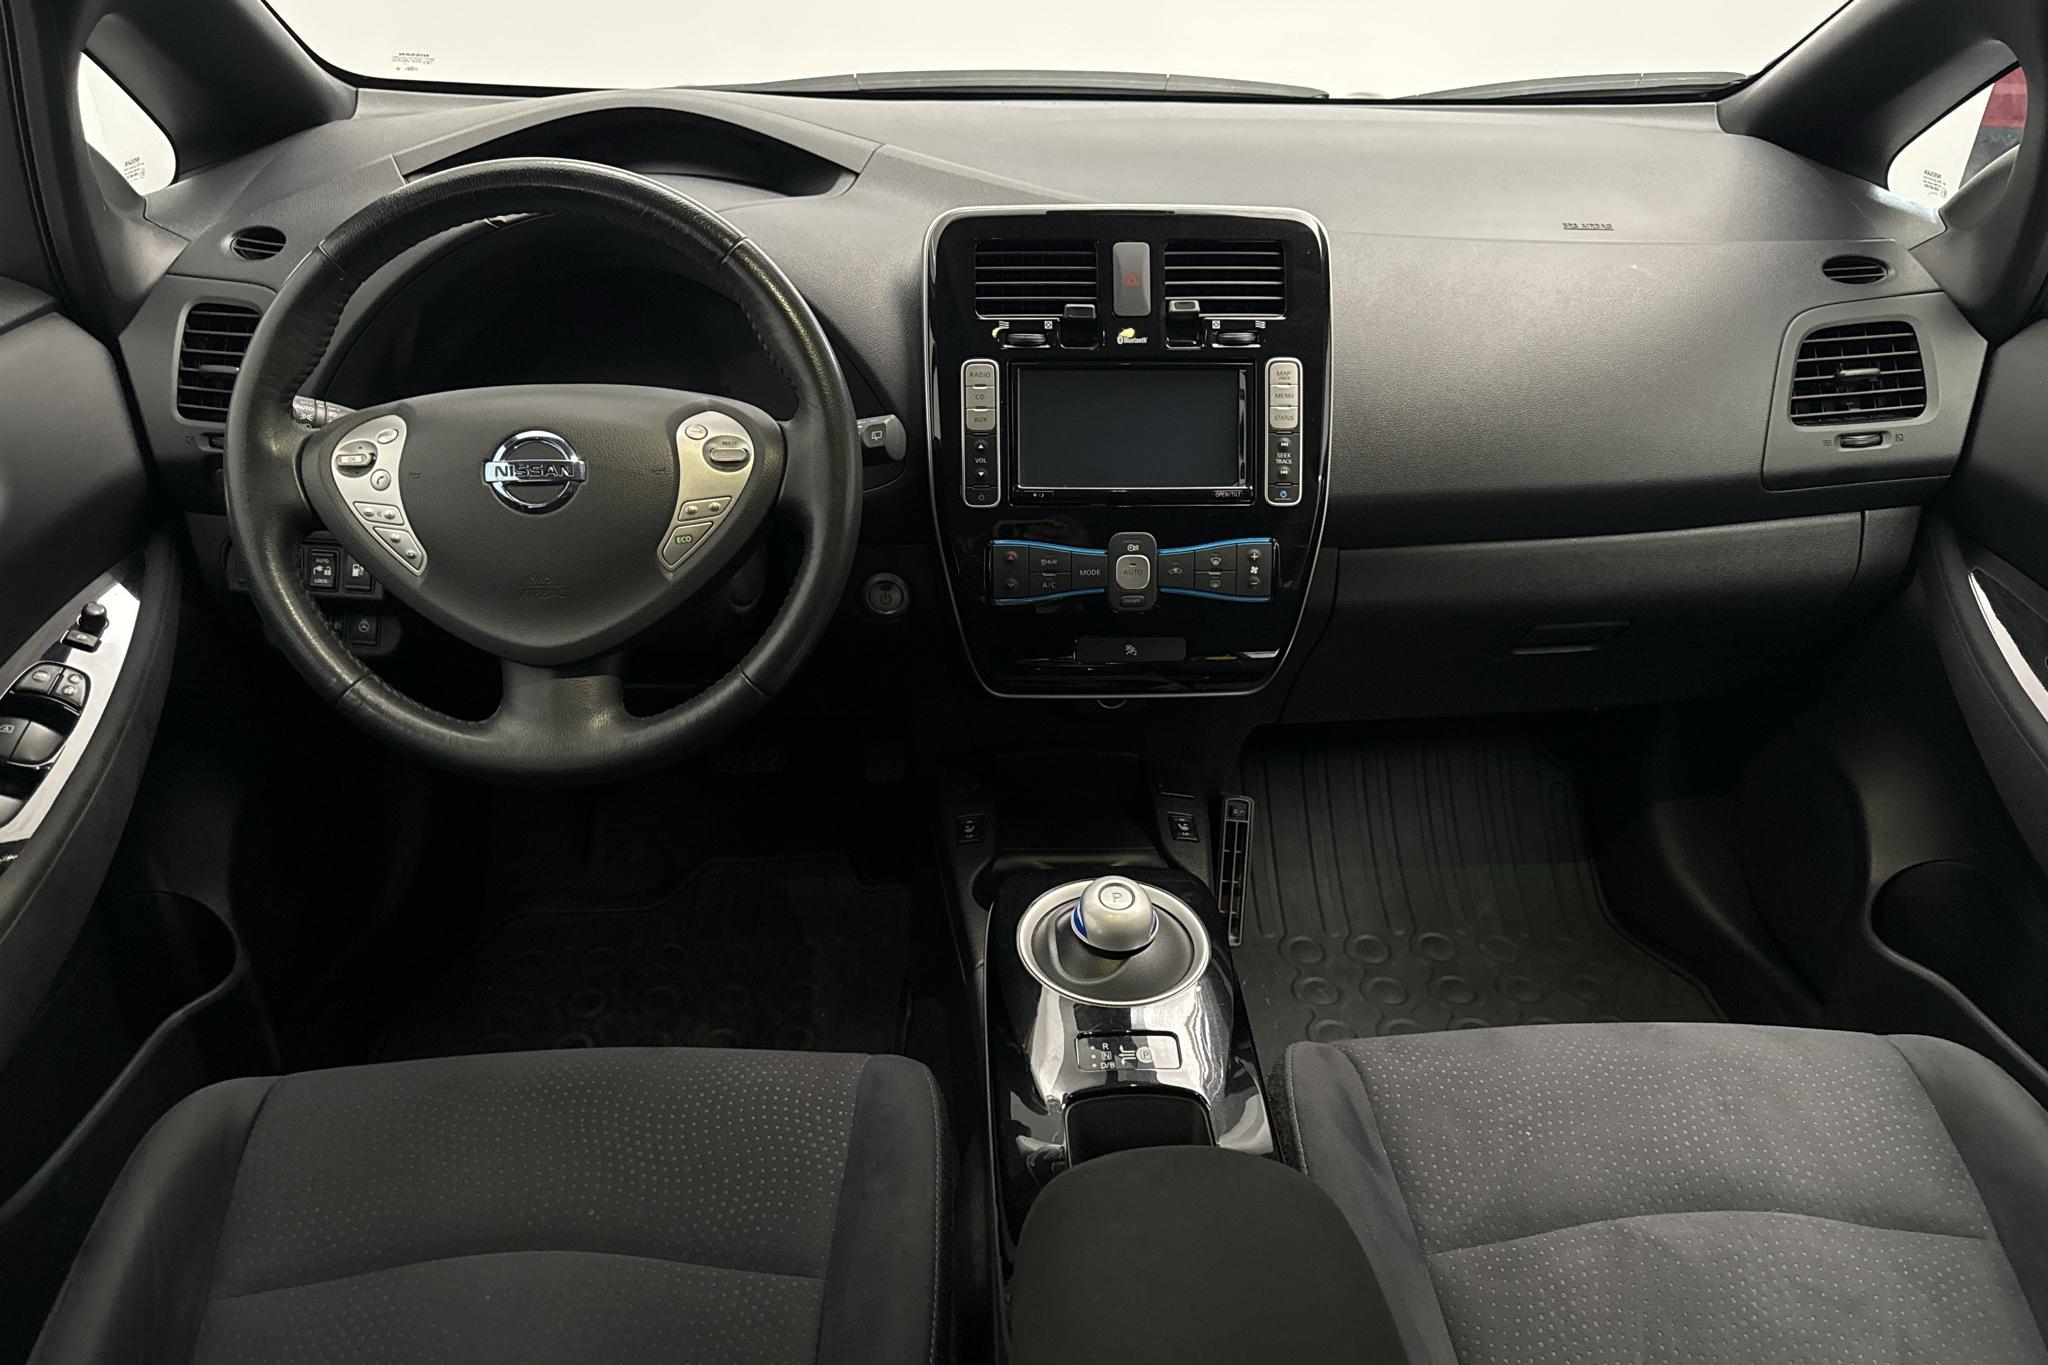 Nissan LEAF 5dr (109hk) - 48 600 km - Automaatne - valge - 2017